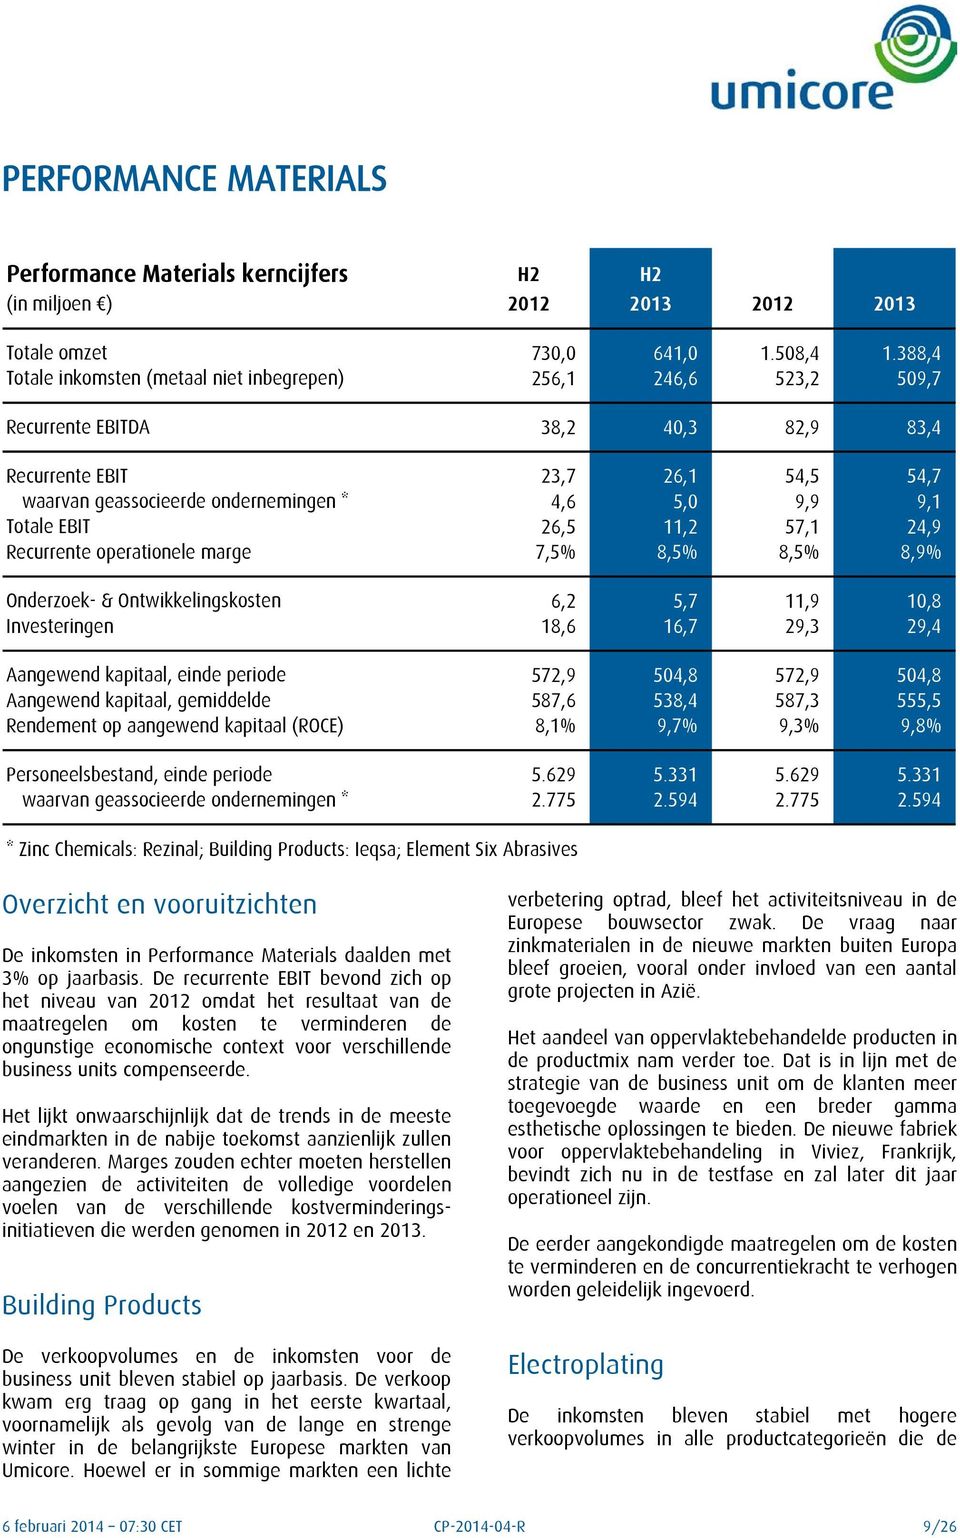 Totale EBIT 26,5 11,2 57,1 24,9 Recurrente operationele marge 7,5% 8,5% 8,5% 8,9% Onderzoek- & Ontwikkelingskosten 6,2 5,7 11,9 10,8 Investeringen 18,6 16,7 29,3 29,4 Aangewend kapitaal, einde